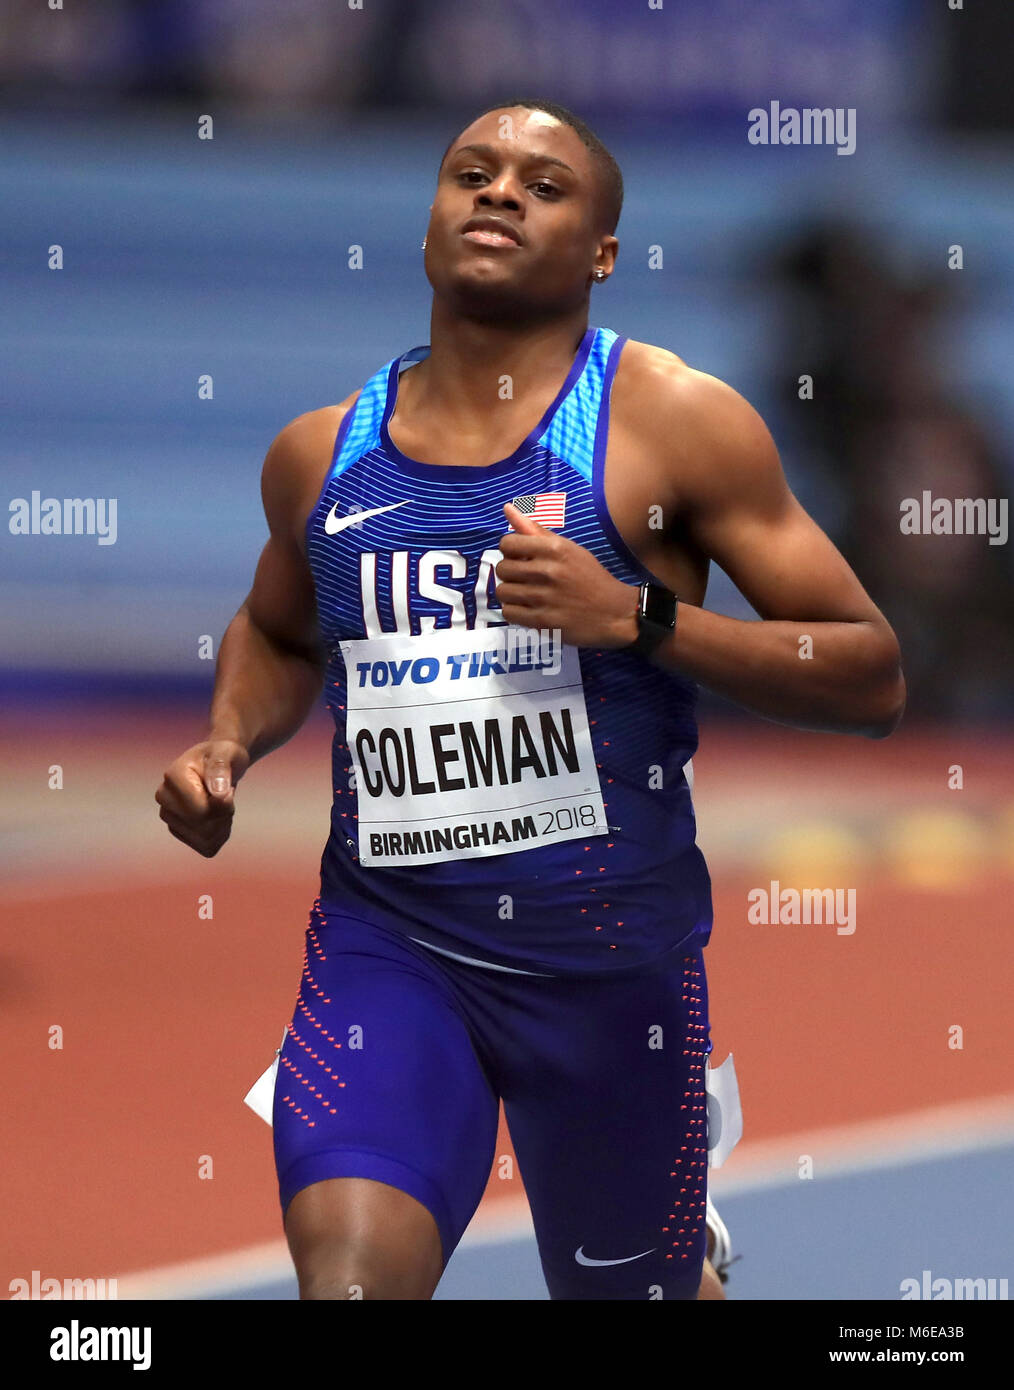 USA's Christian Coleman au cours de la troisième journée du Championnat du Monde Indoor de l'IAAF 2018 à l'Arena de Birmingham. Banque D'Images